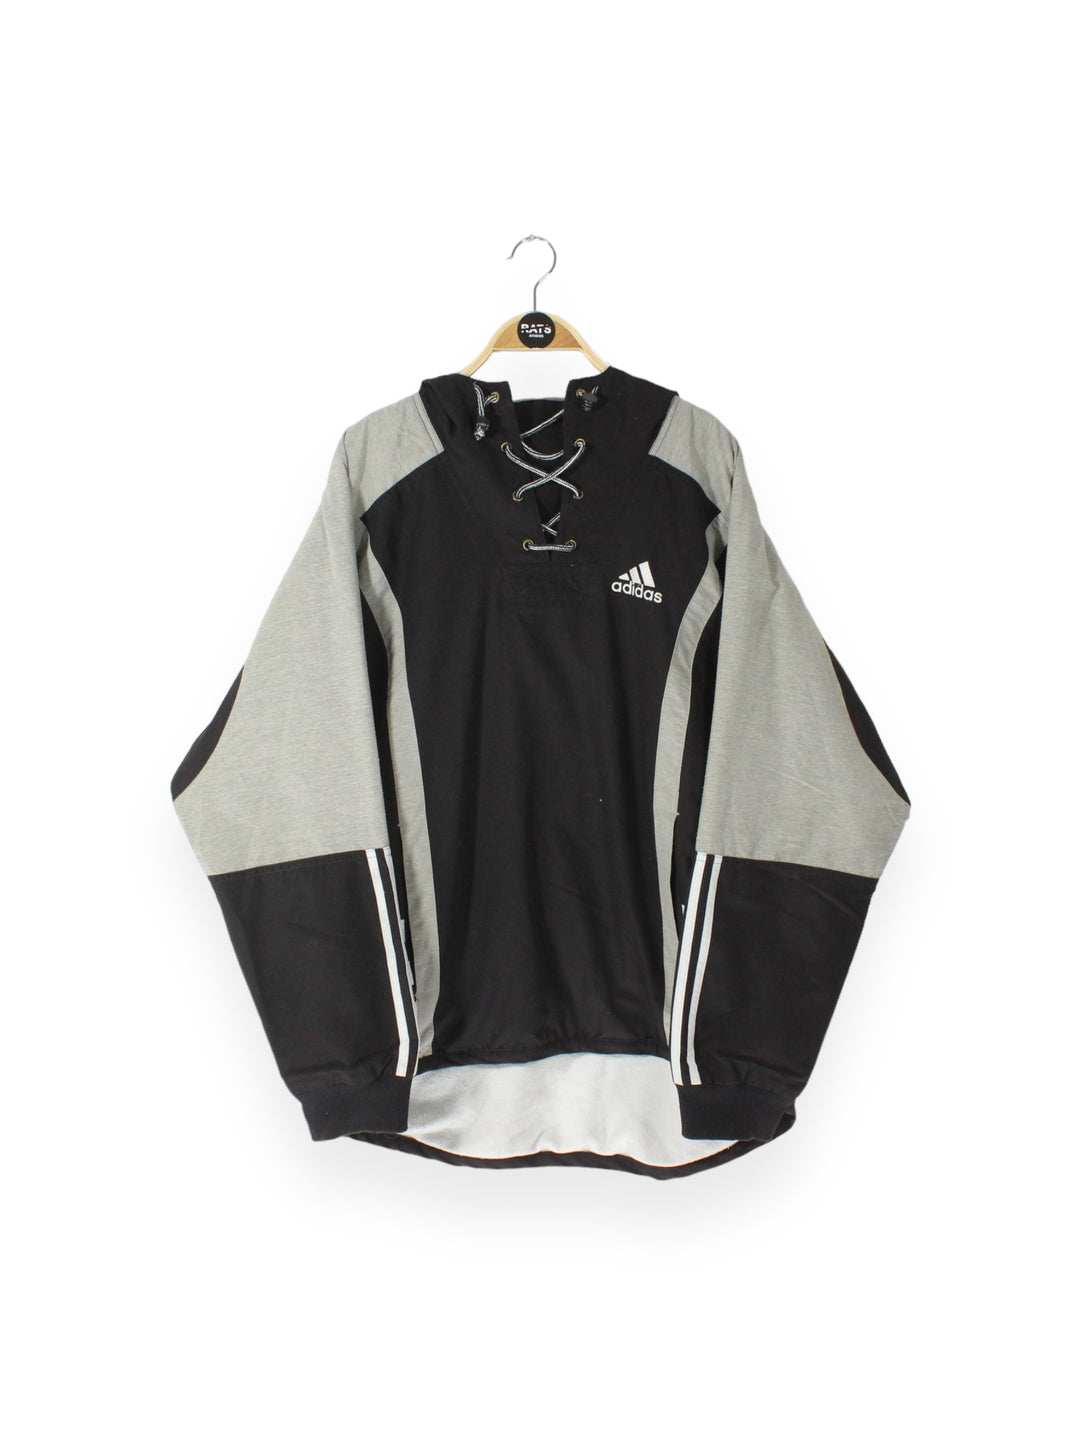 90's Adidas Pullover Jacket Men's Medium